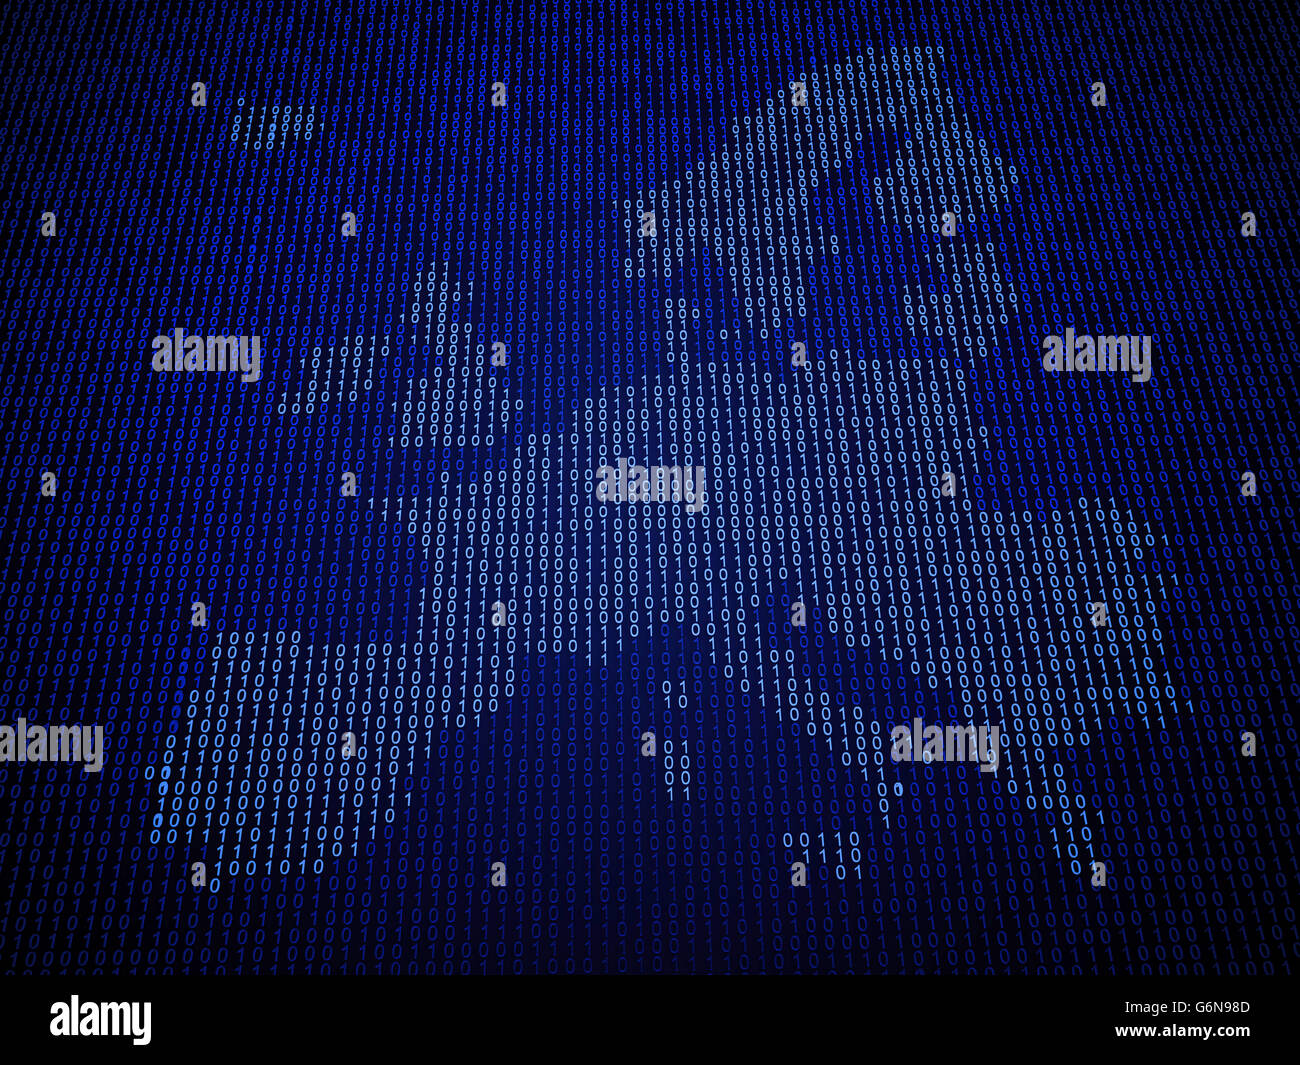 Europäischen Union Karte aus Binärcode Stockfoto